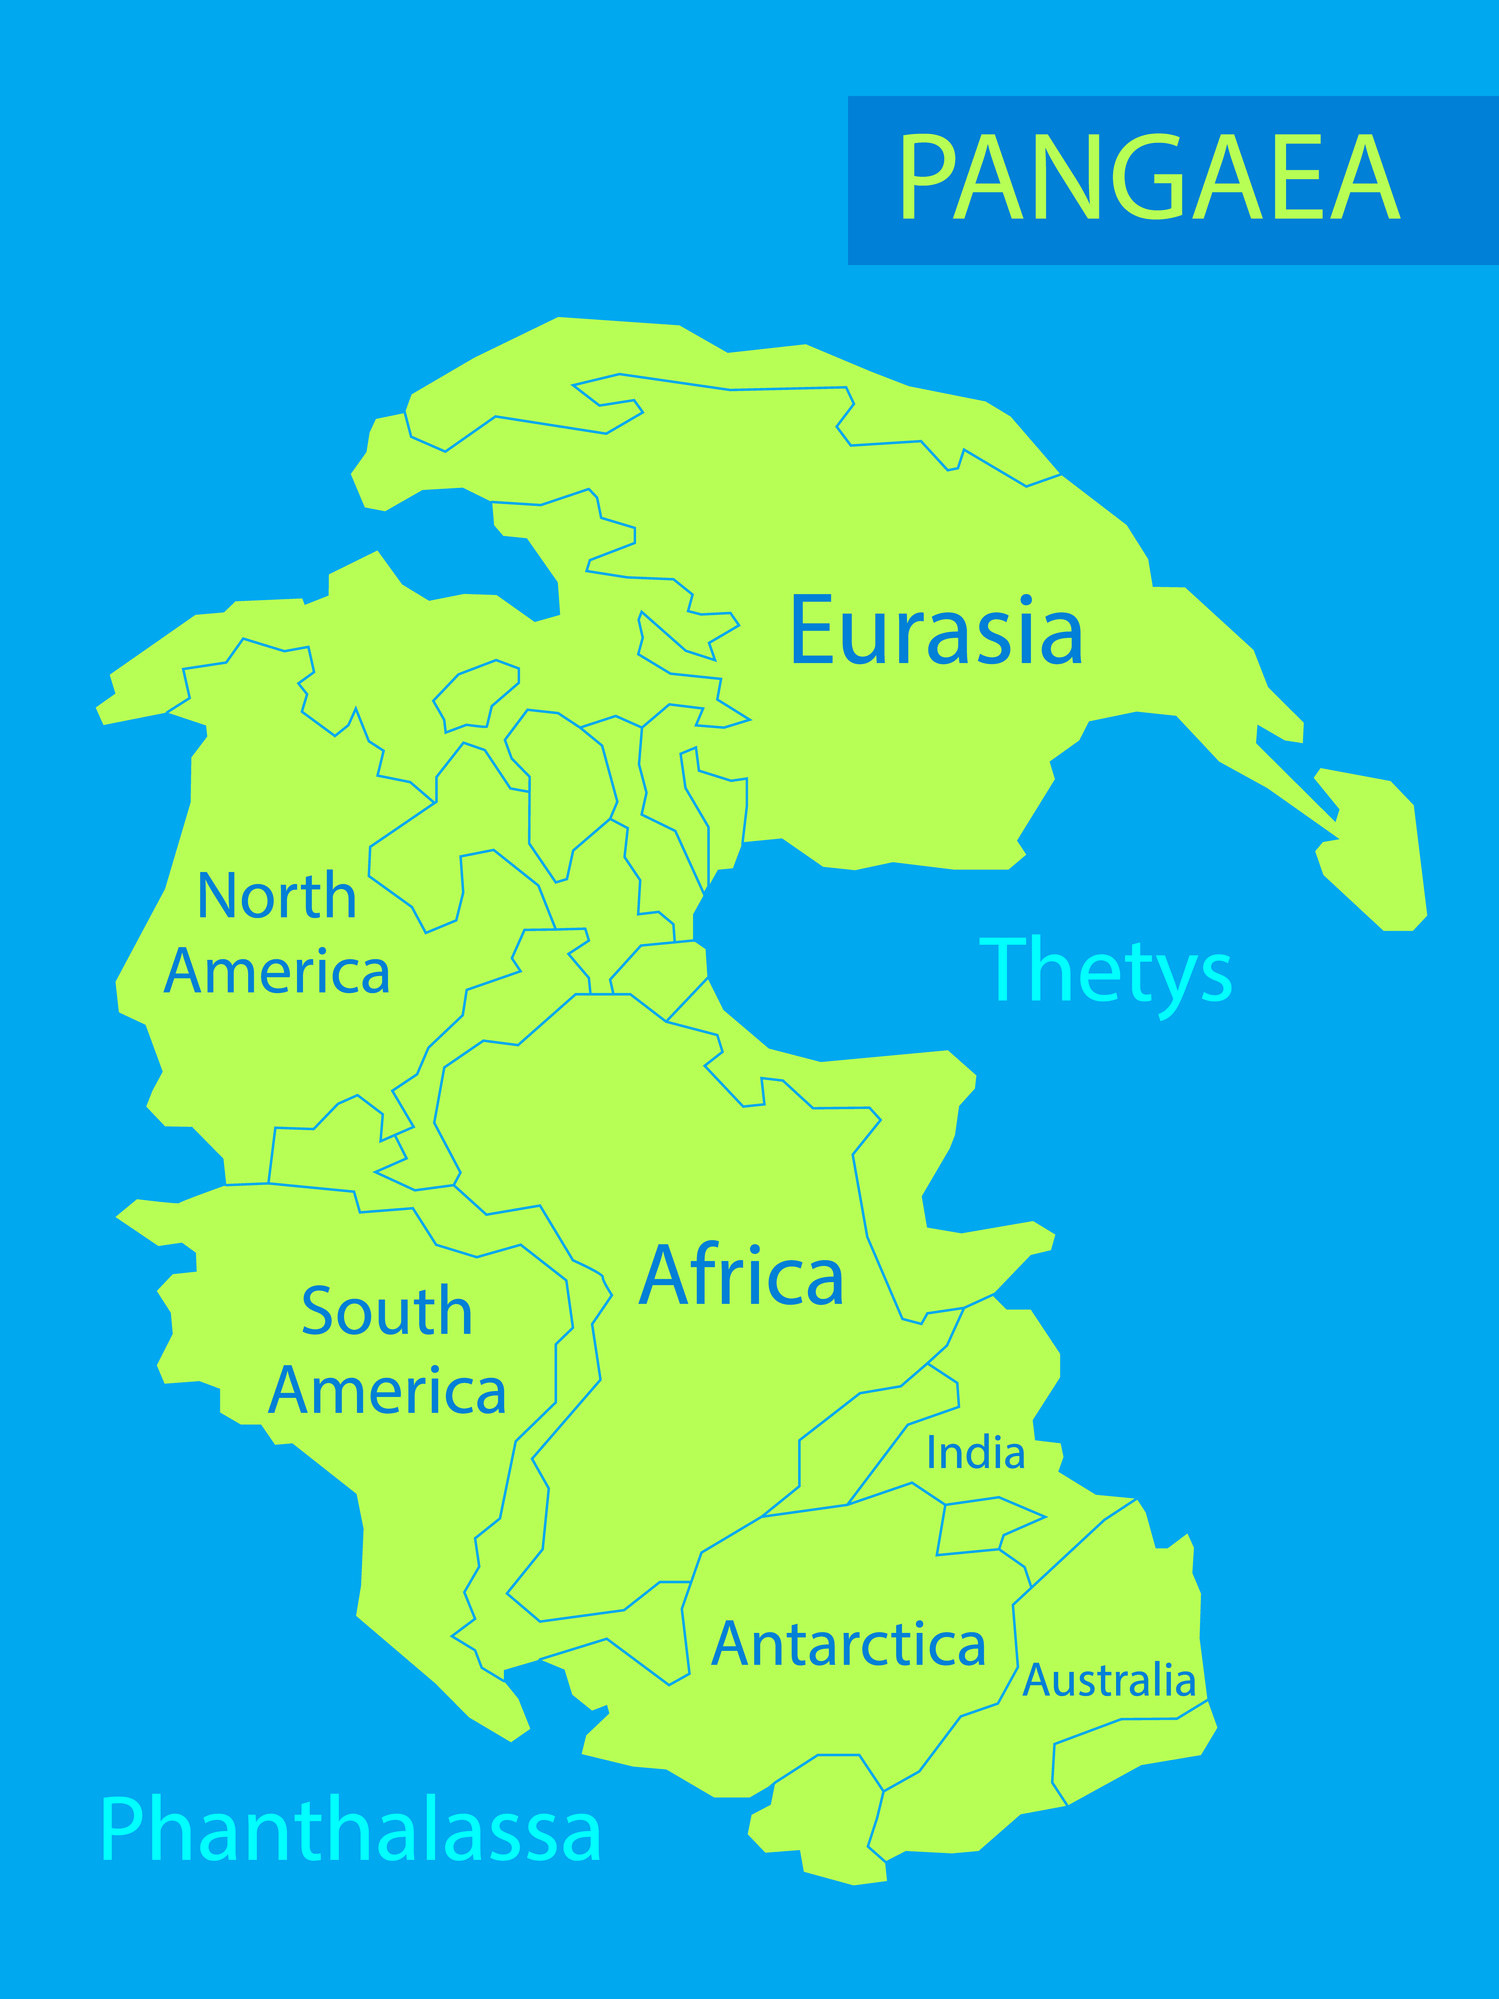 A map of Pangaea